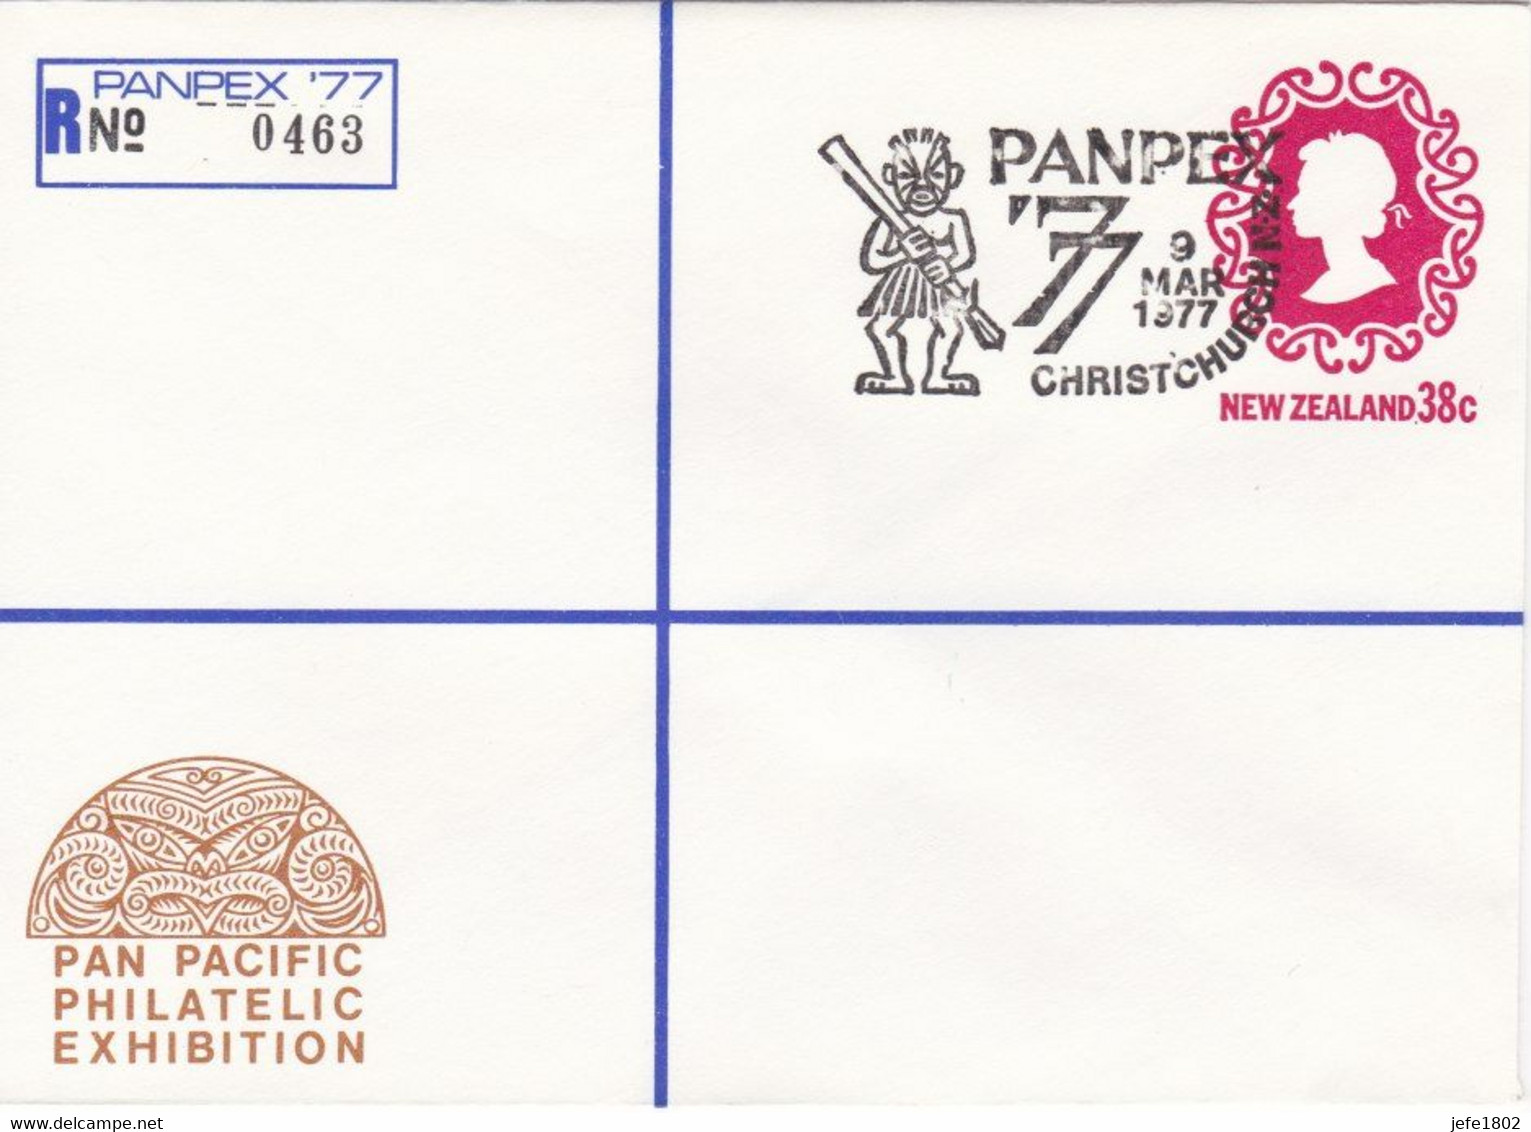 Registered Letter PANPEX '77 - N° 0463 - TEKO-TEKO Gable Ornament From Roof Of House - 9 Mar 1977 - Ganzsachen